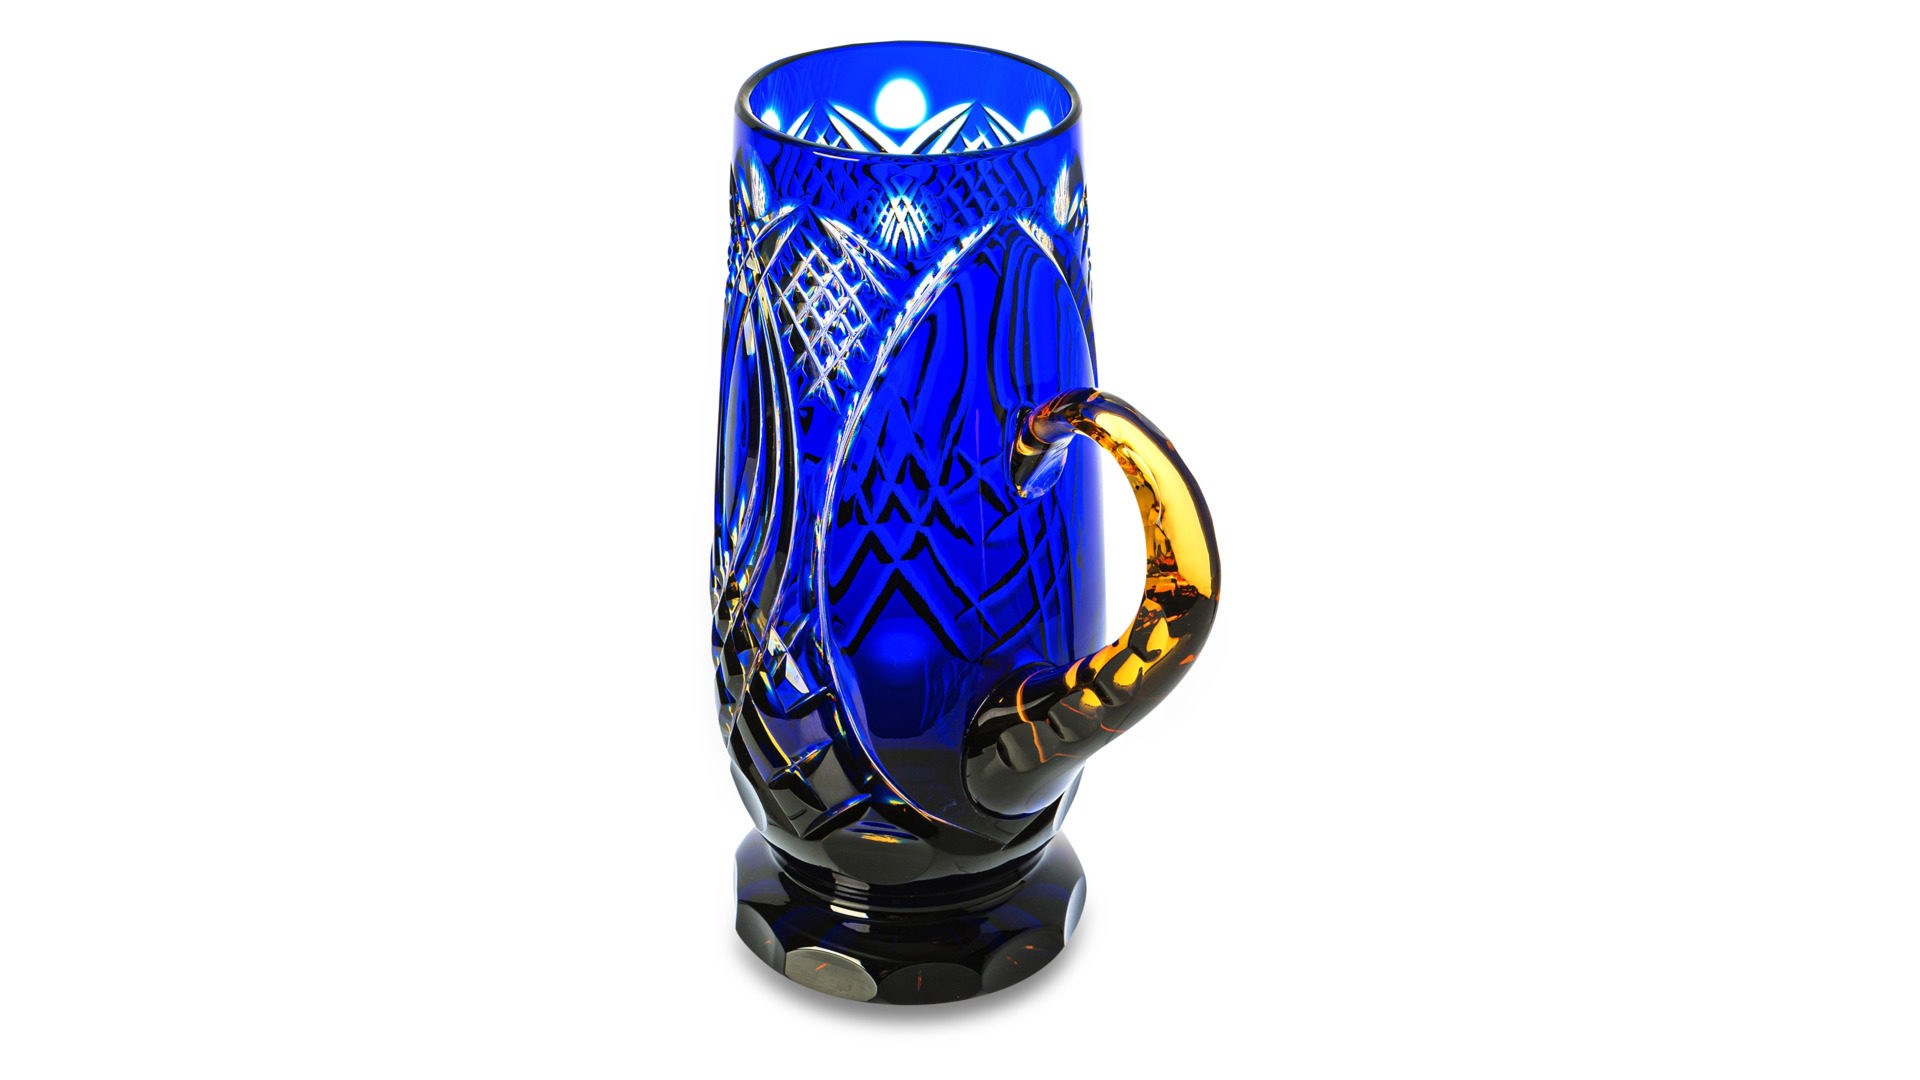 Кружка для пива ГХЗ Банзай 750 мл, хрусталь, янтарно-синяя